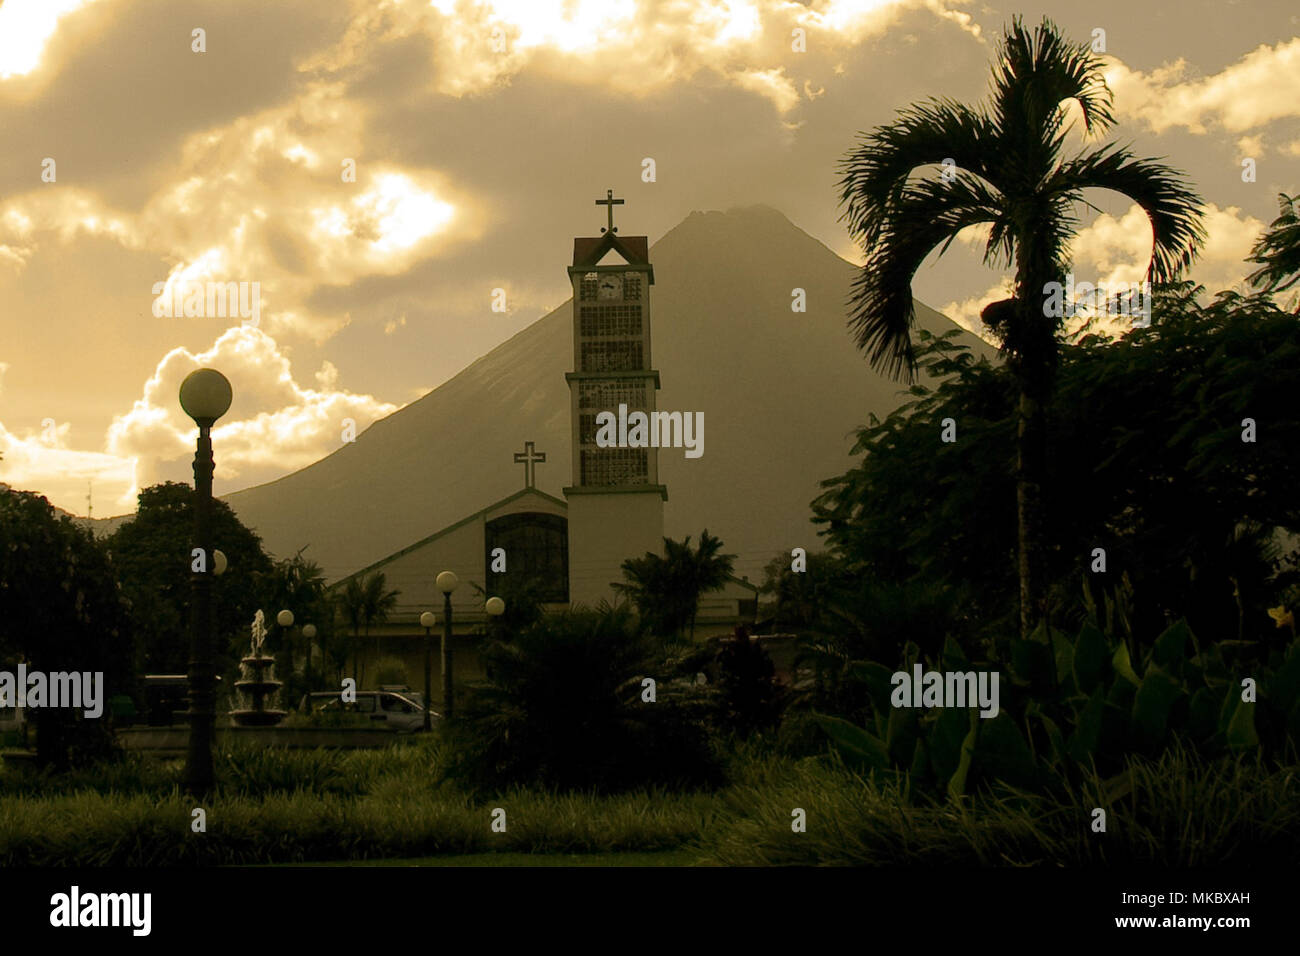 View of the La Fortuna Church and Arenal Volcano in La Fortuna, Costa Rica Stock Photo